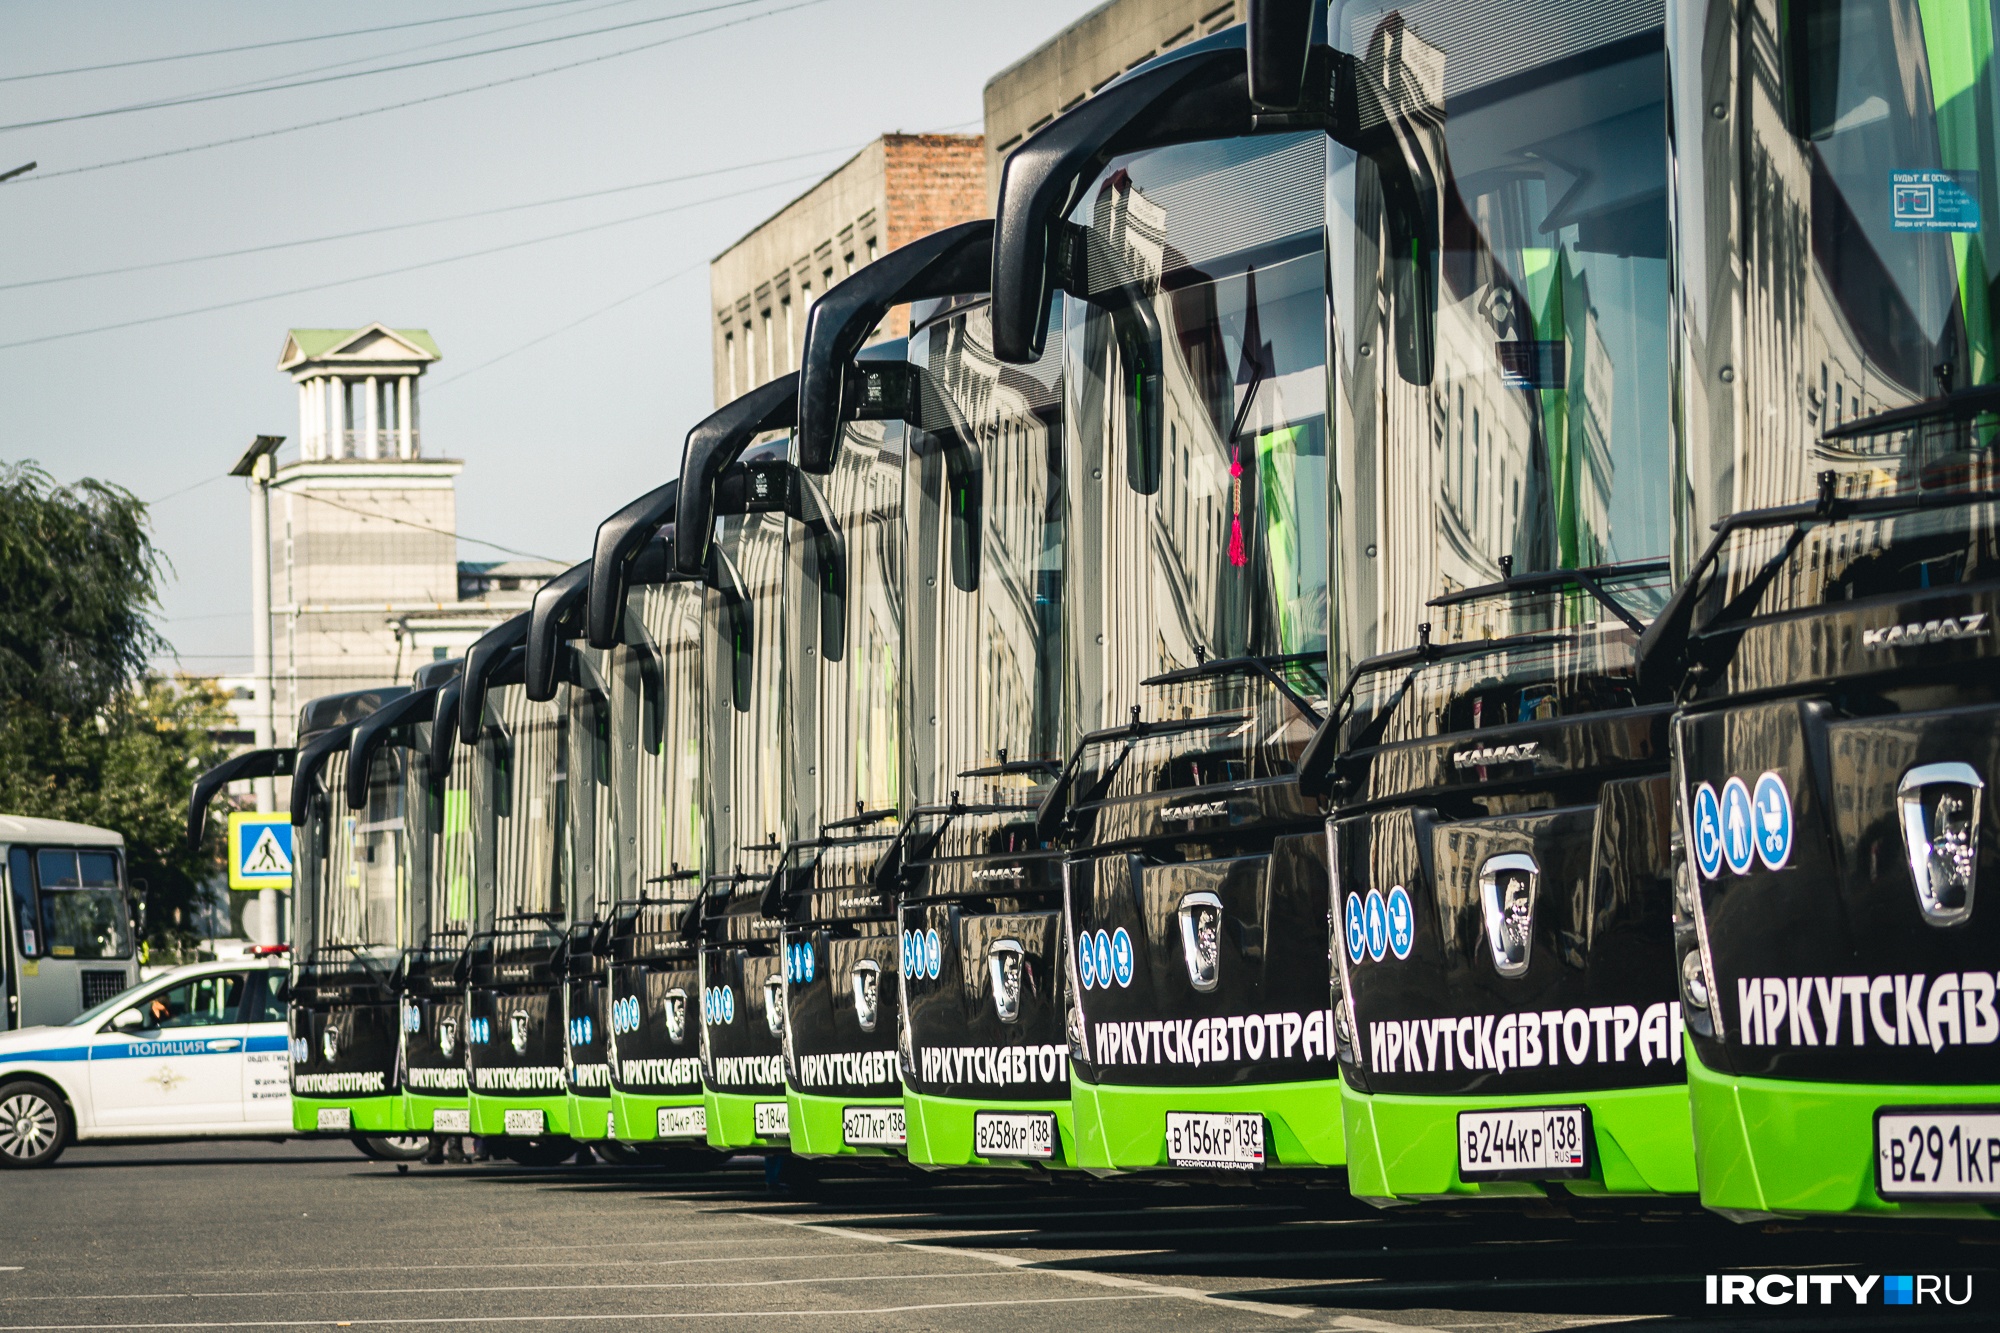 34 новых автобуса запустили на маршруты в Иркутске 5 сентября